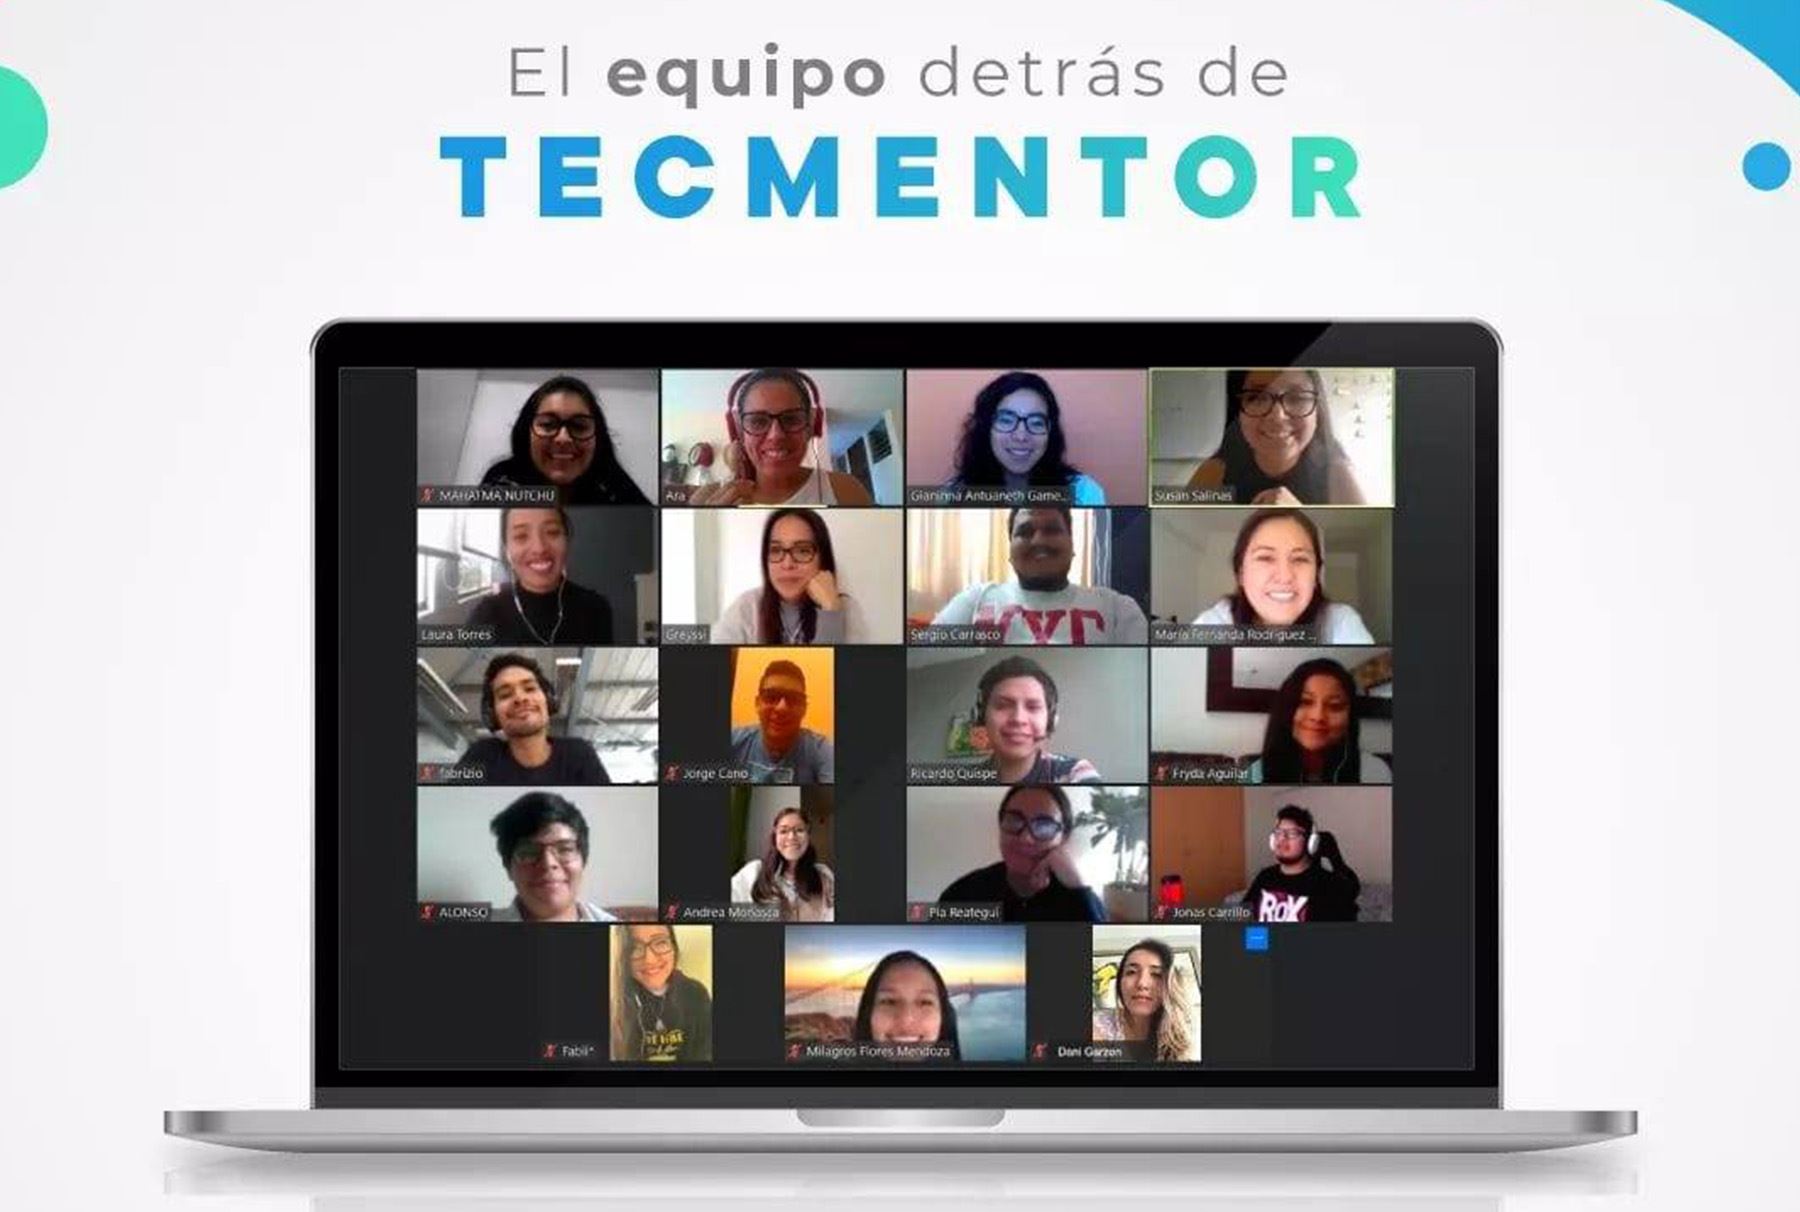 En dos meses TECMentor  ha capacitado a 100 maestros a nivel nacional y cuenta con 100 mentores digitales.